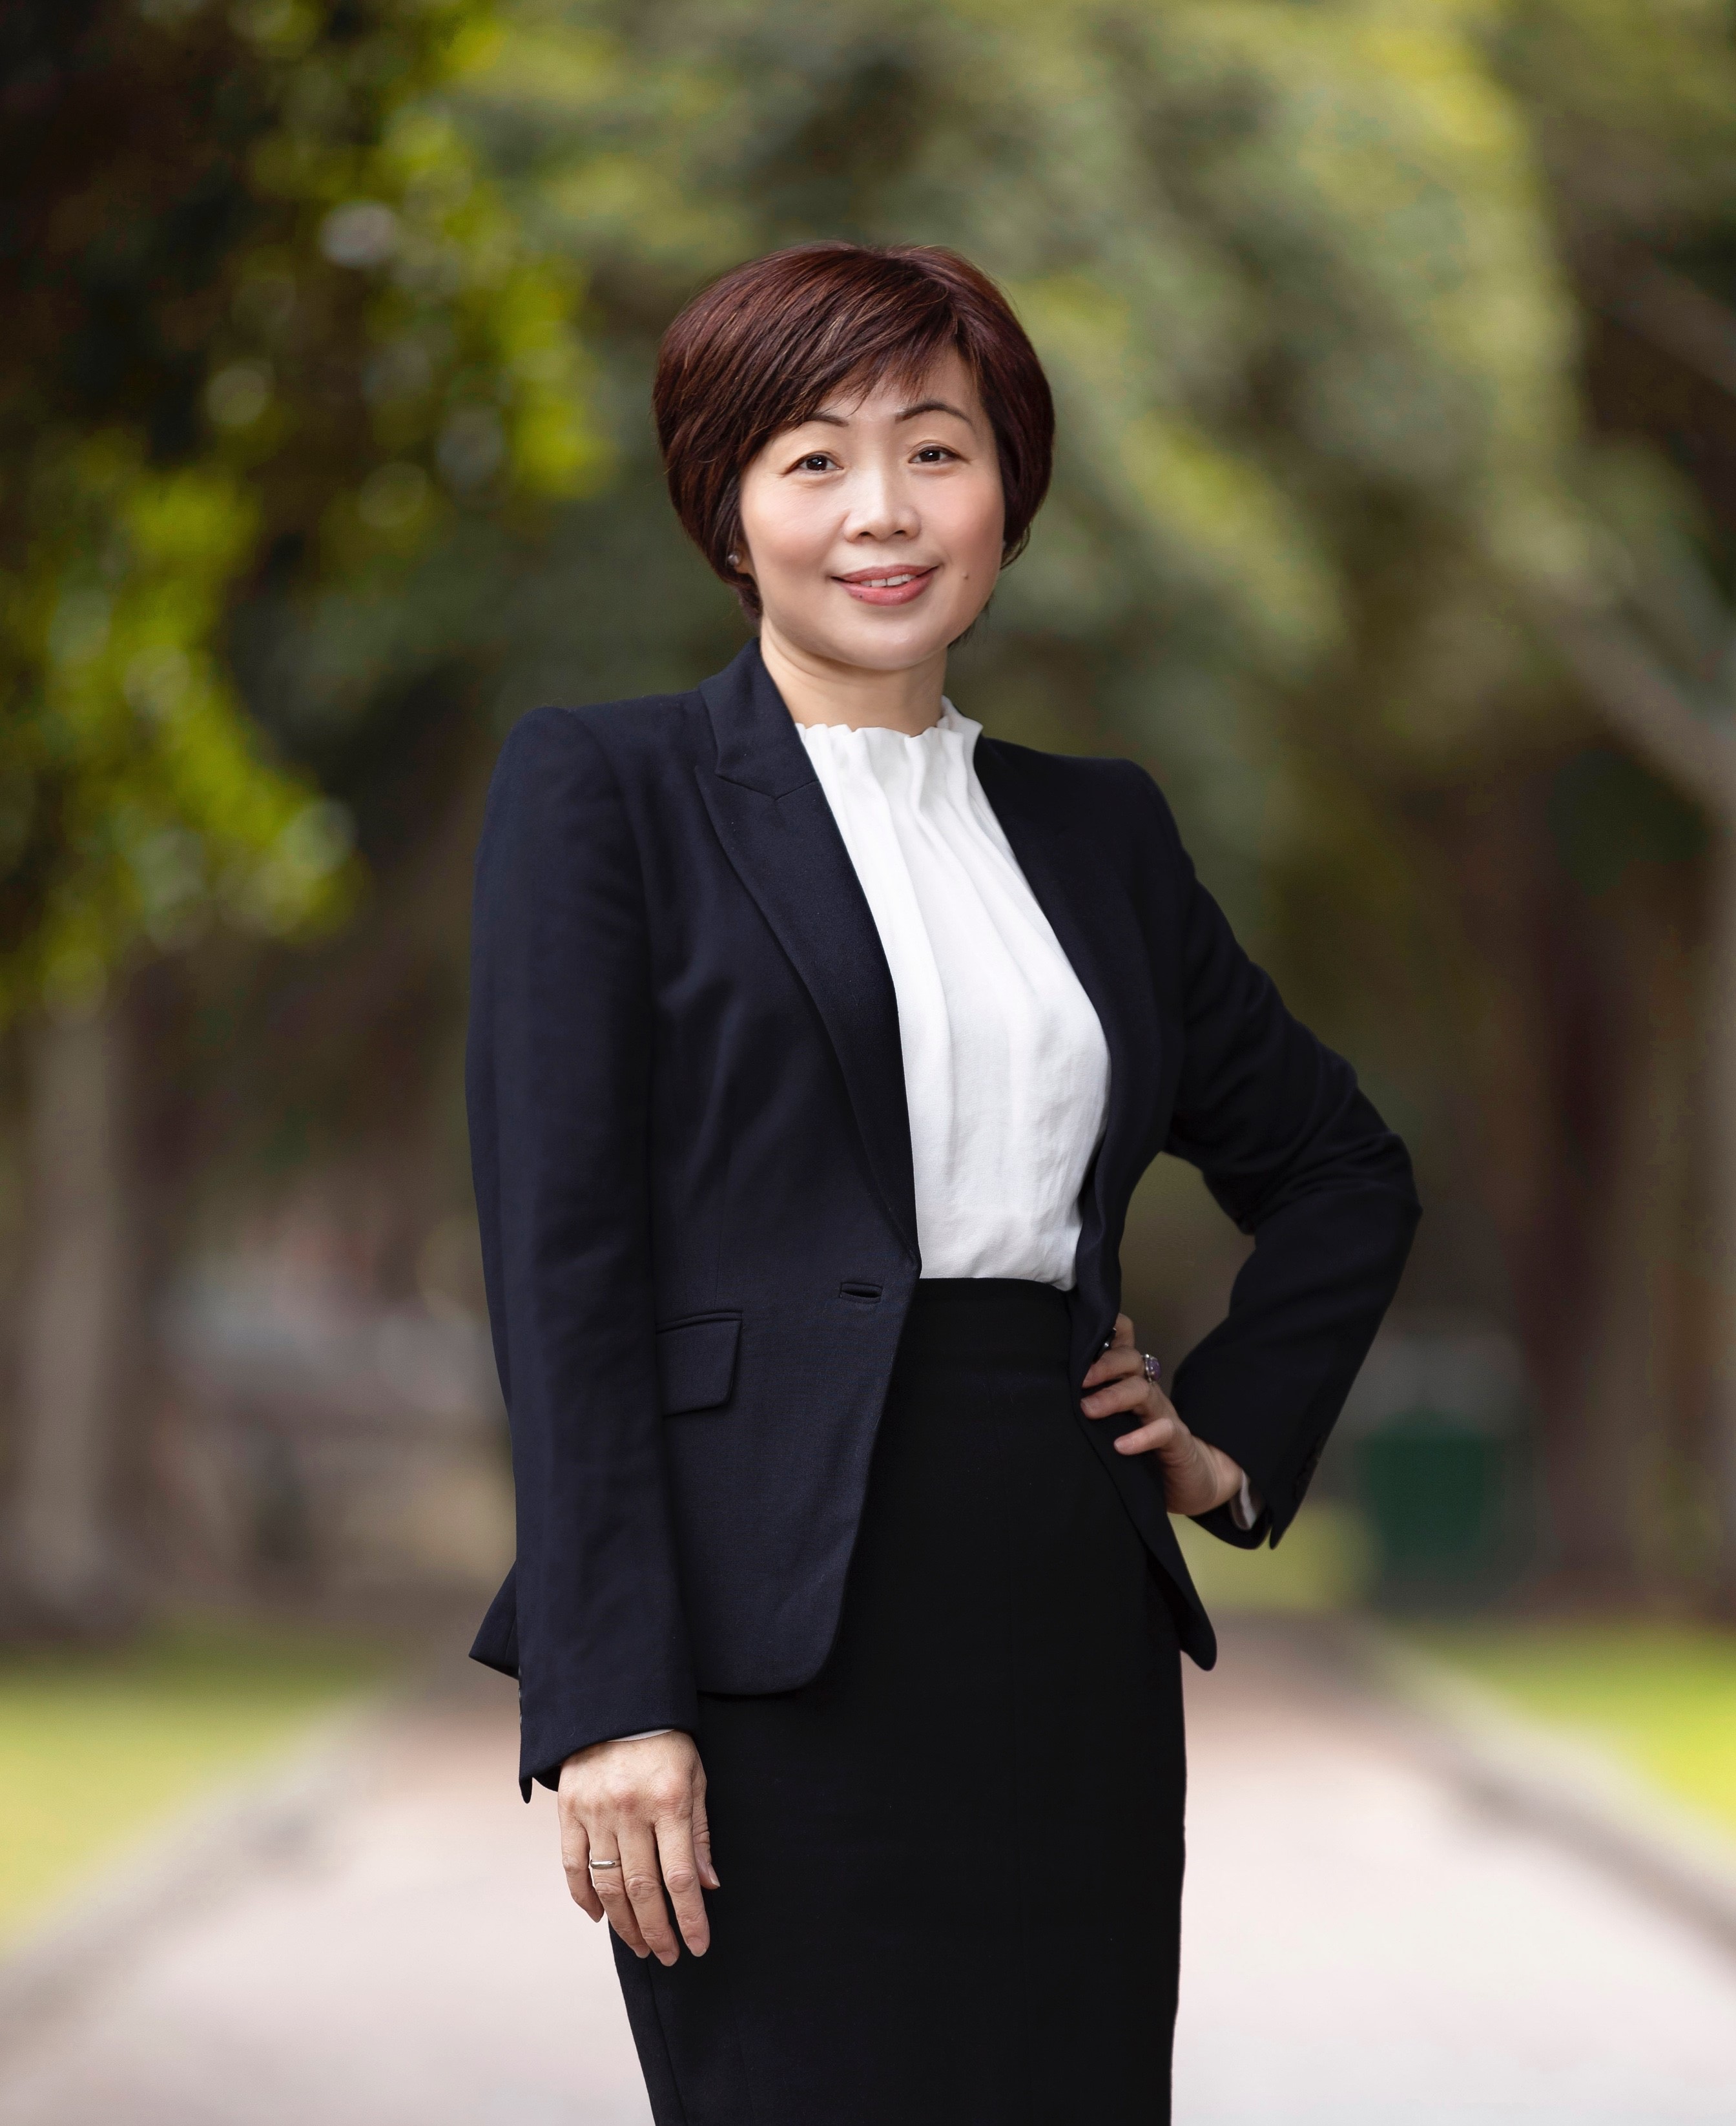 Wan Hao Michelle Cai Real Estate Agent